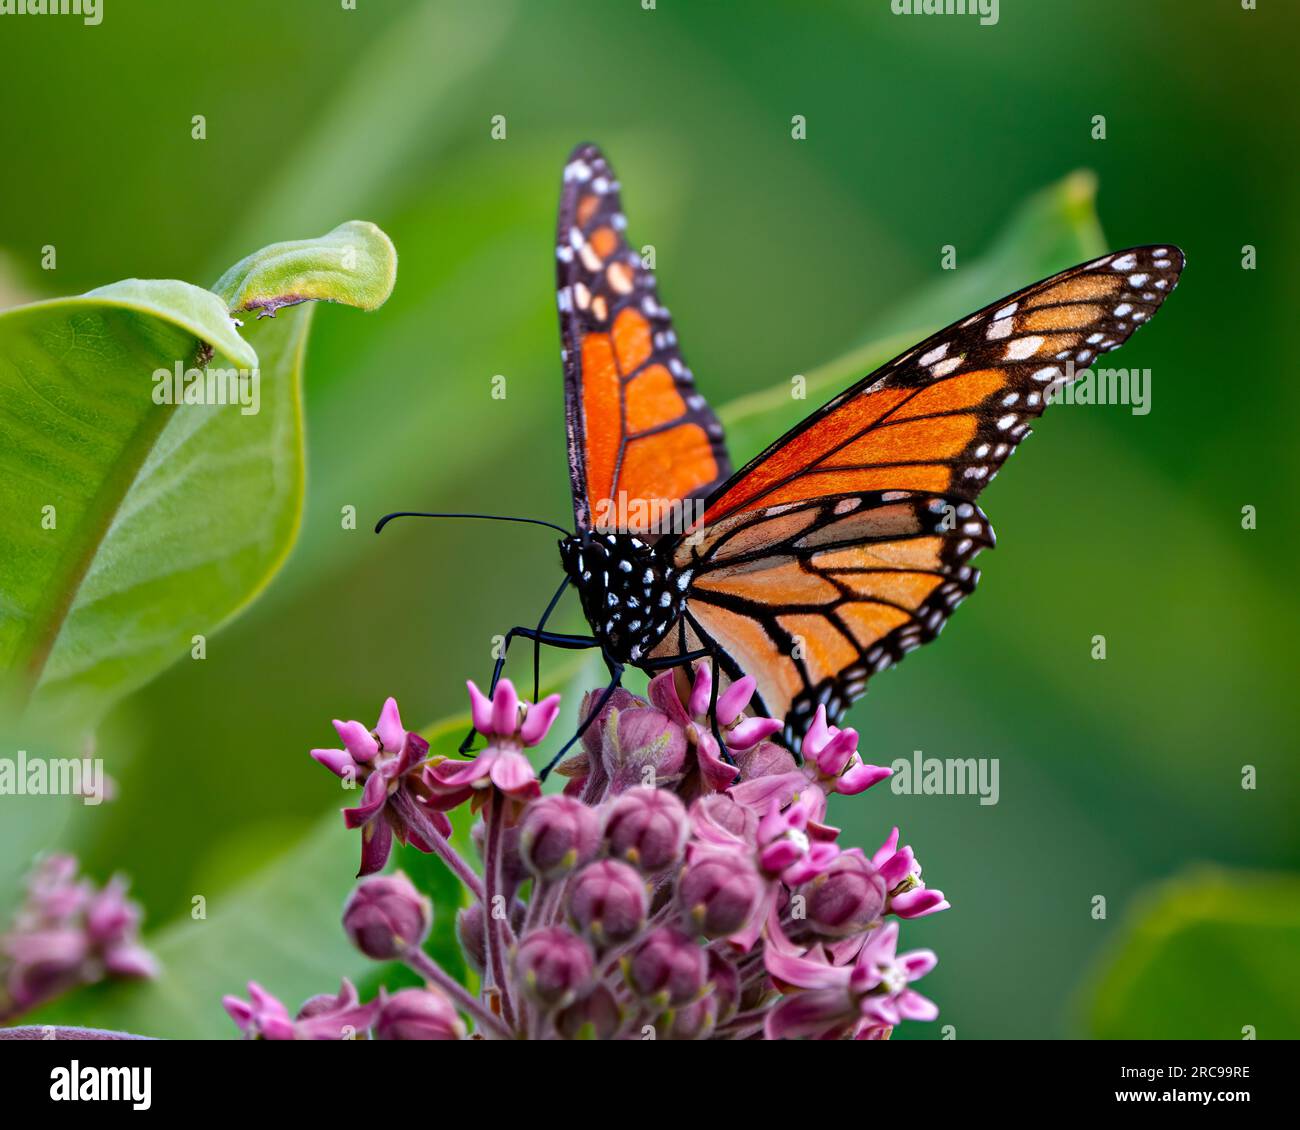 Monarch Butterfly sirotant ou buvant du nectar d'une plante d'herbe à lait avec un fond vert flou dans son environnement et son habitat environnant. Papillon. Banque D'Images